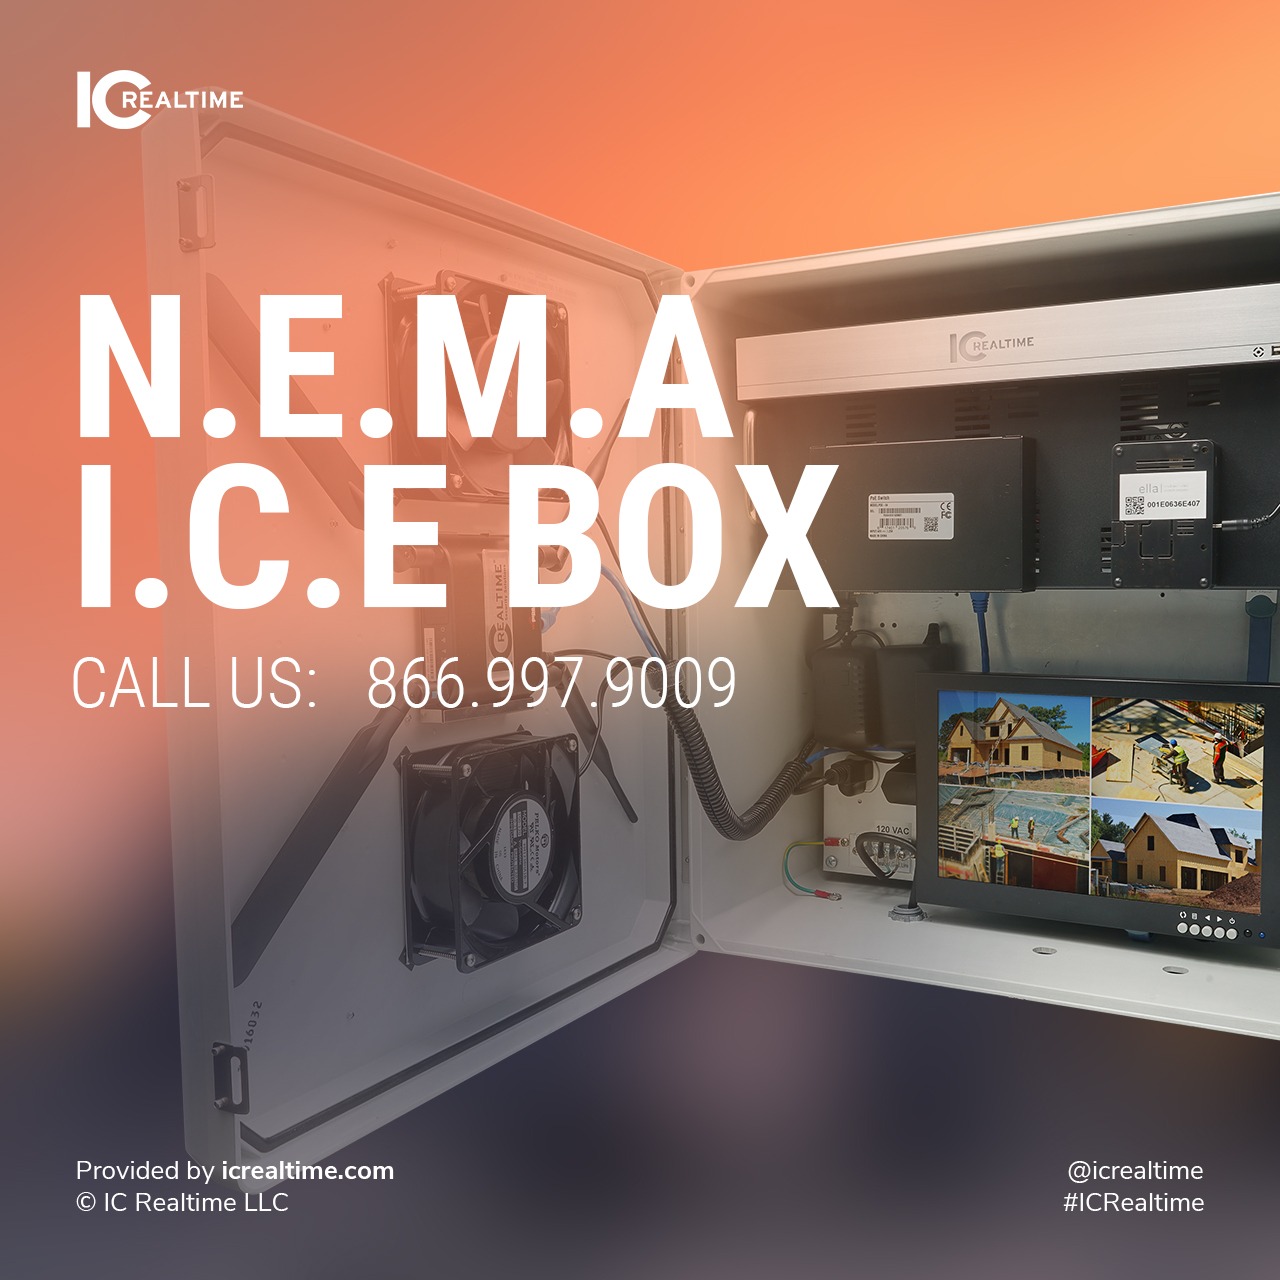 NEMA I.C.E Box by IC Realtime 33